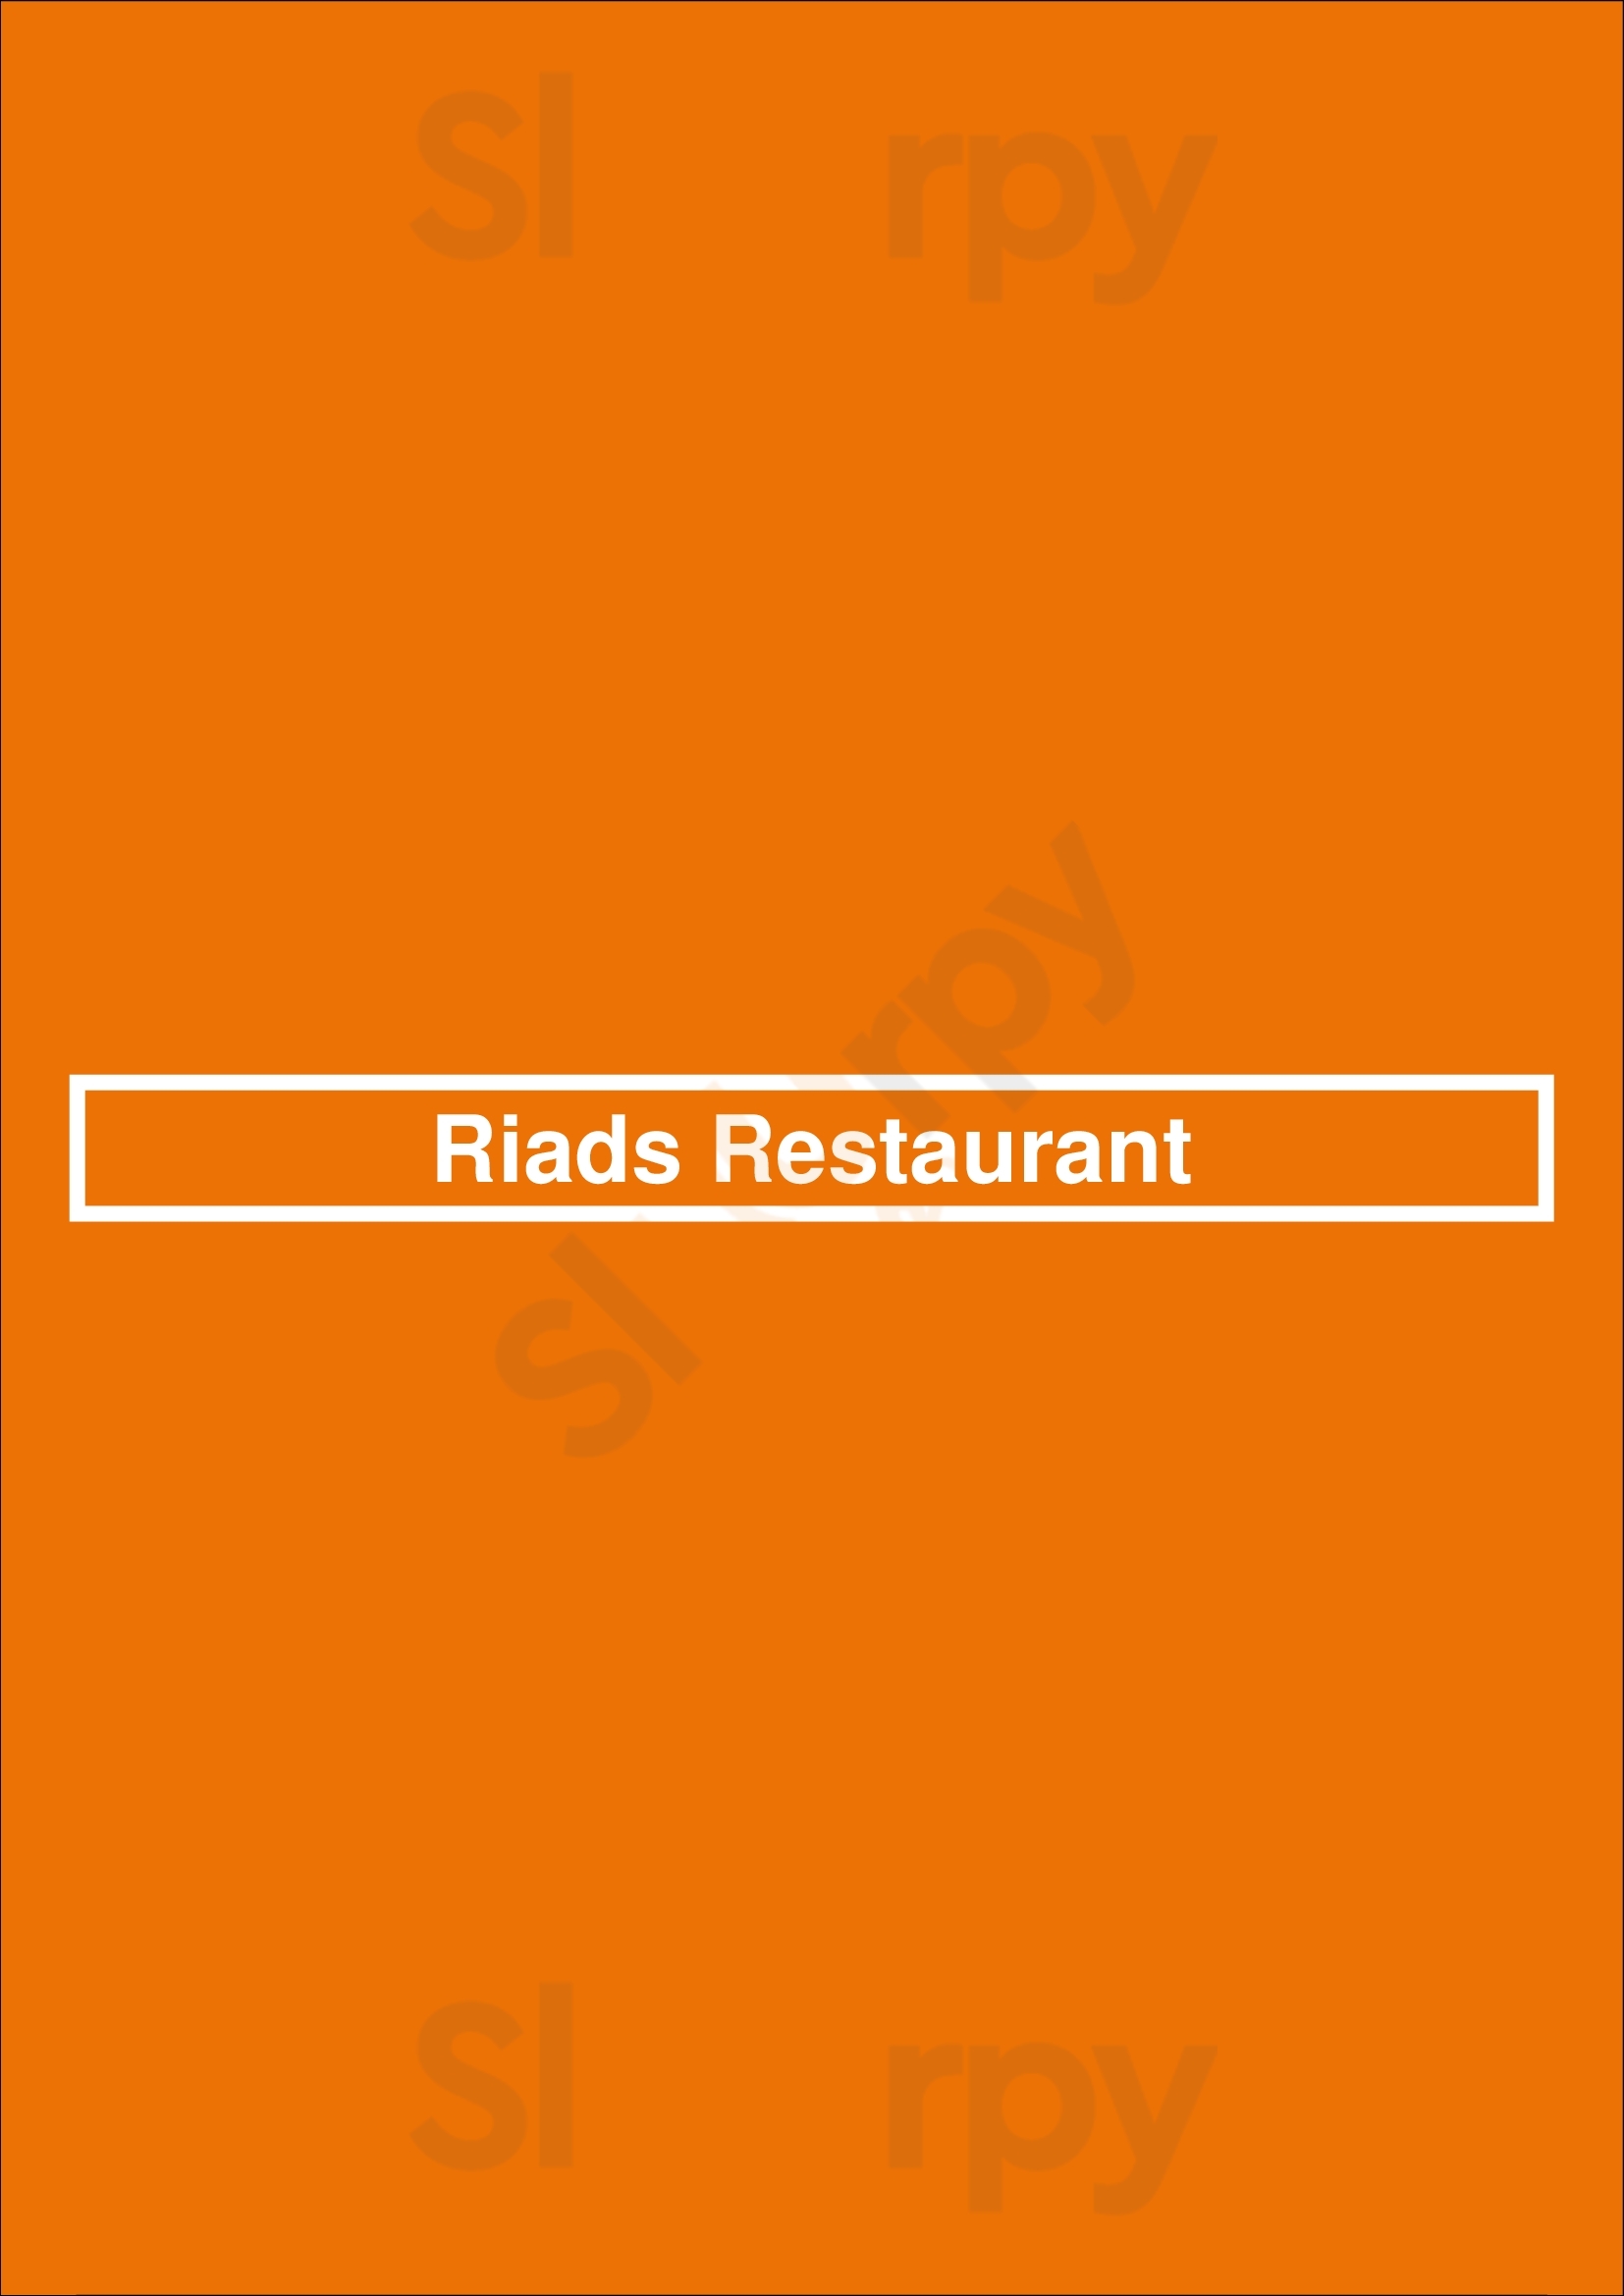 Riads Restaurant Hamburg Menu - 1